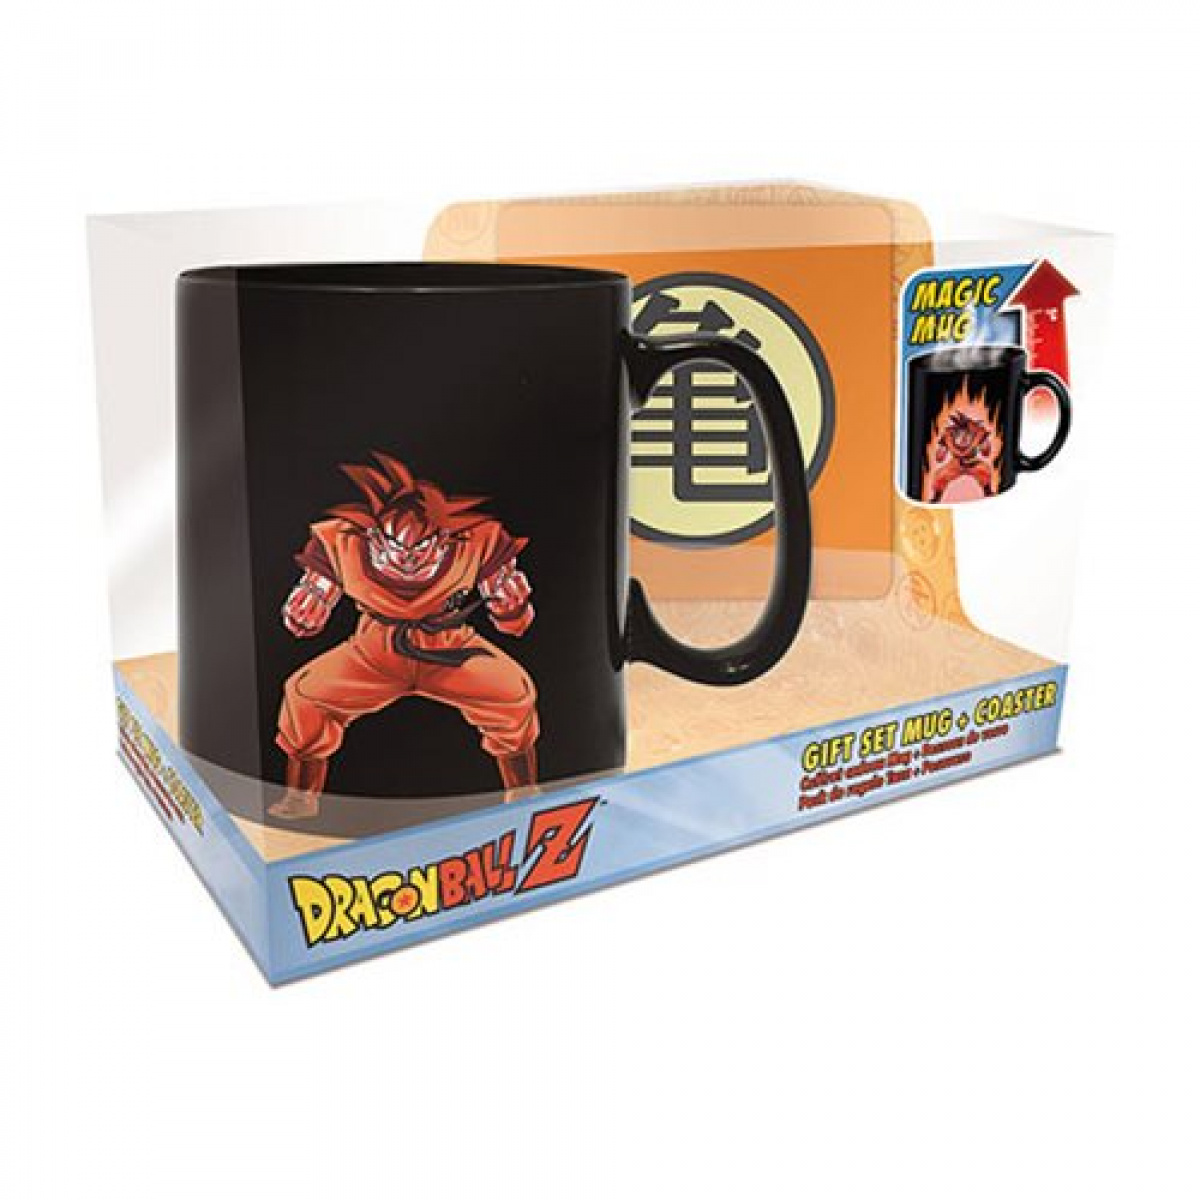 Dragon Ball Z Goku Heat-Change Mug and Coaster Gift Set